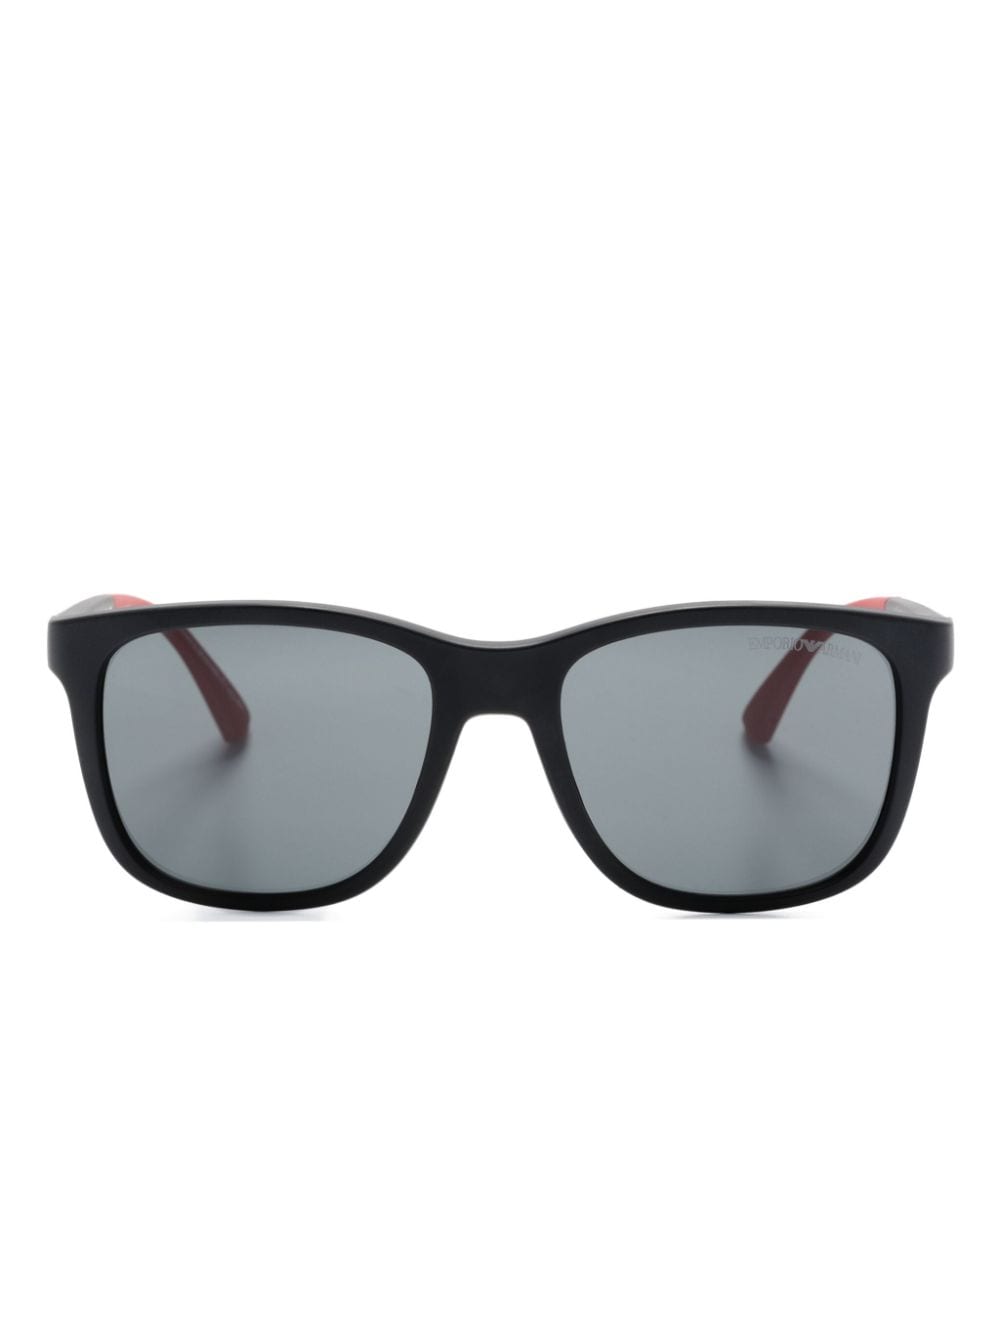 Emporio Armani Kids' Square-frame Sunglasses In Black